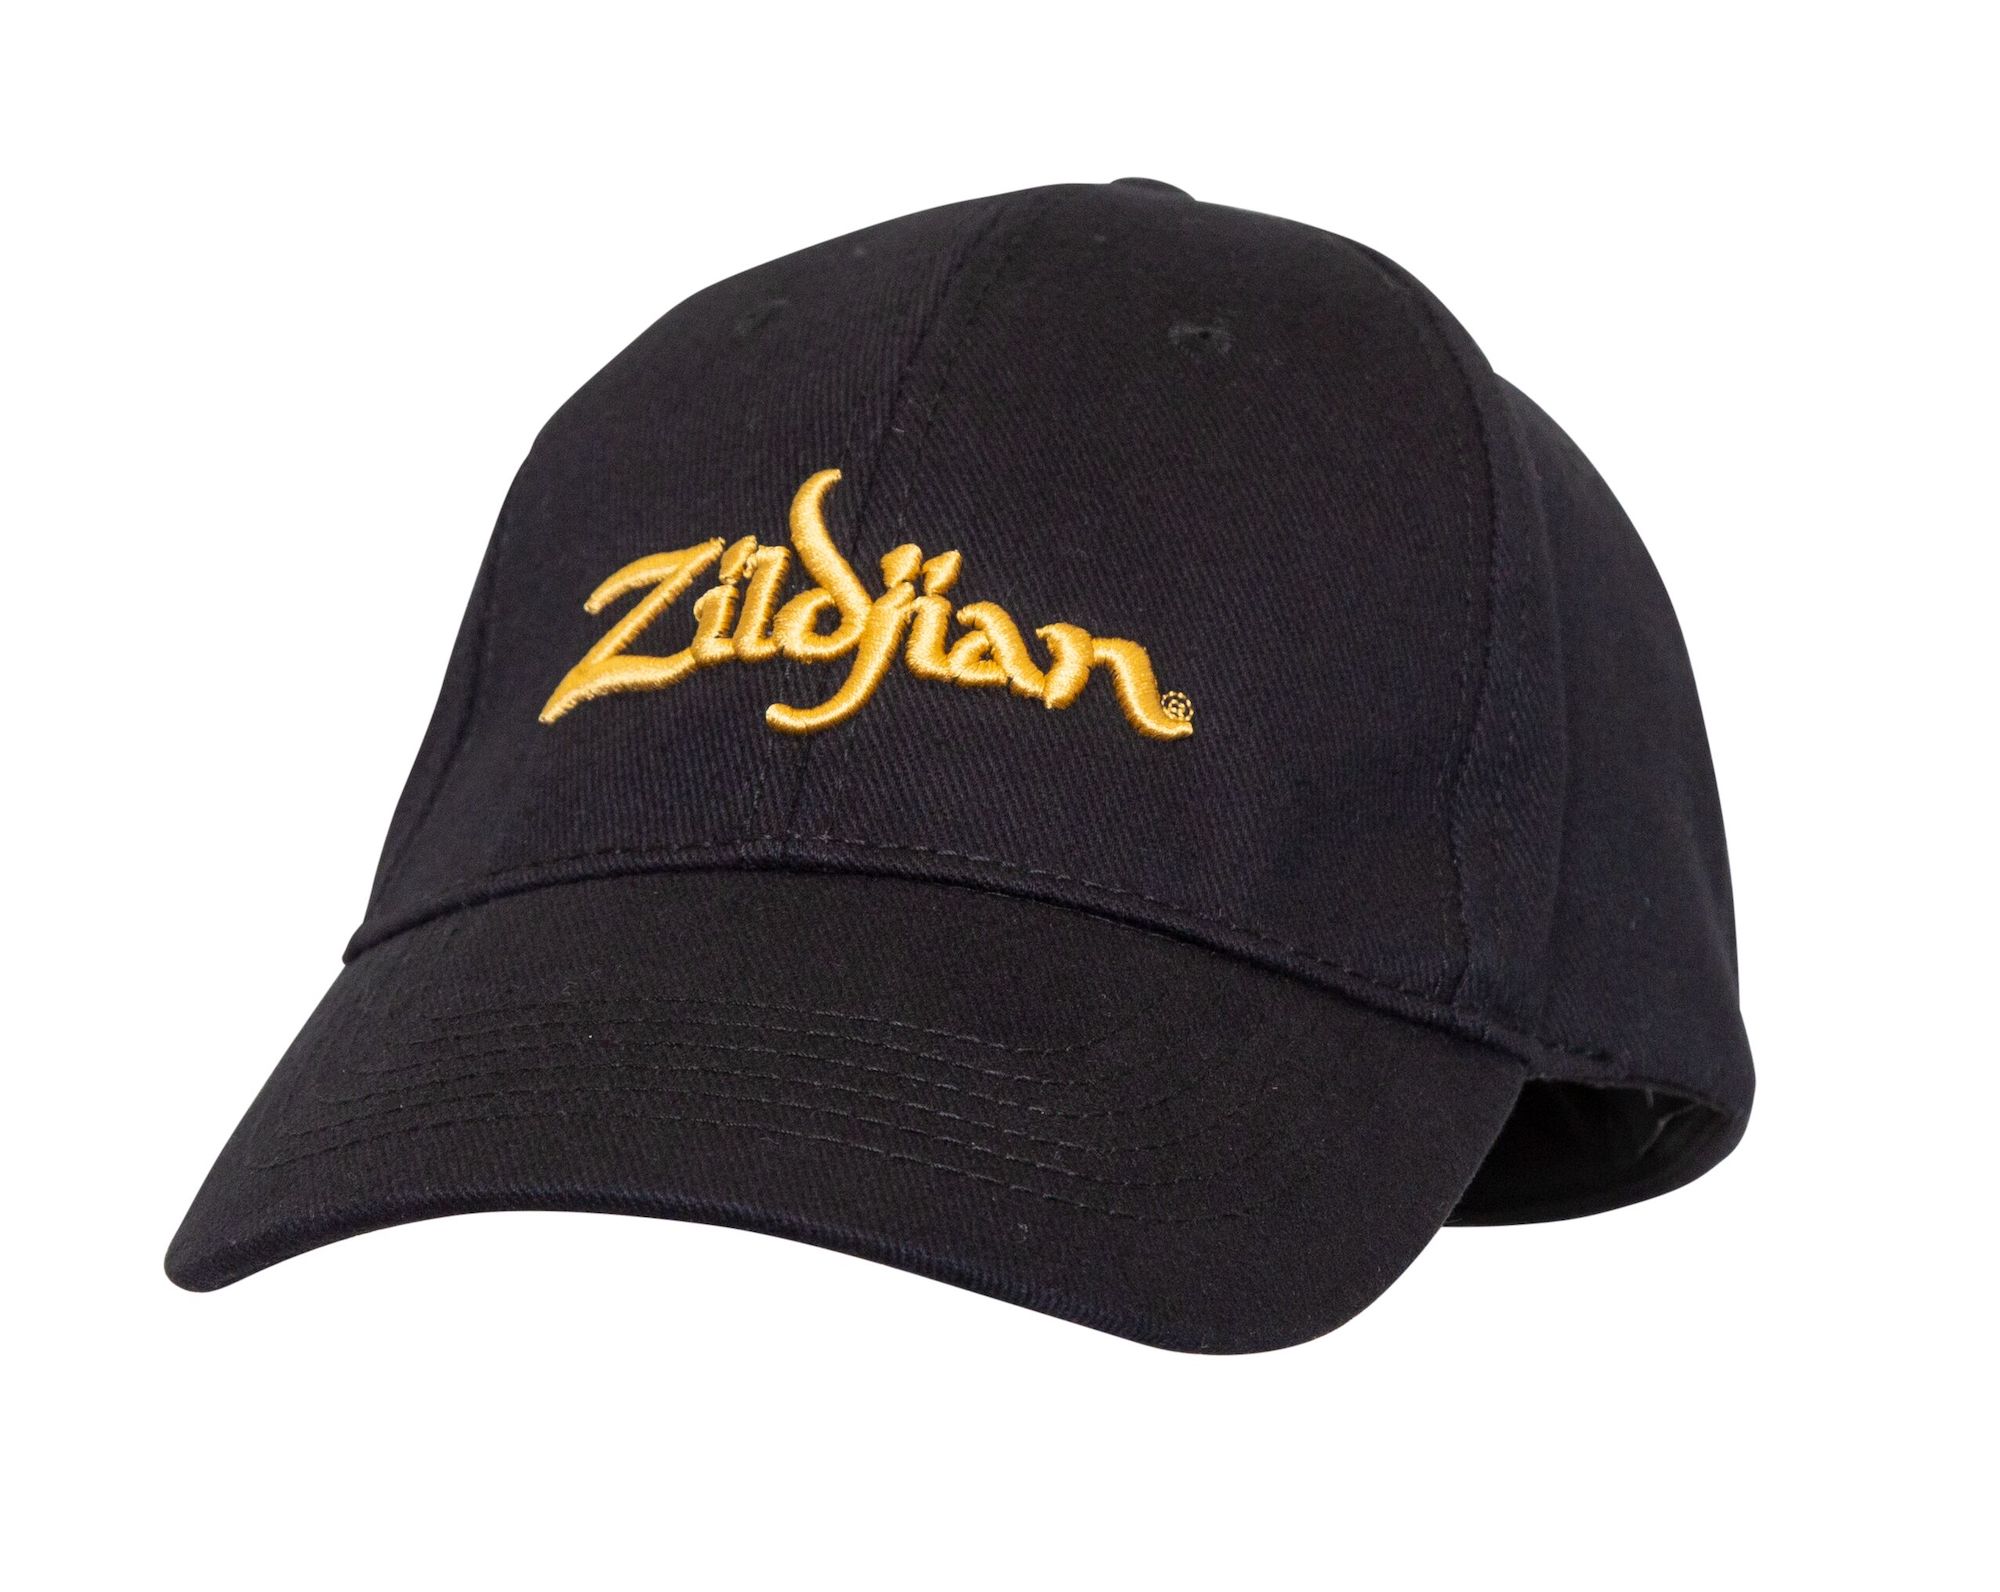 An image of Zildjian Classic Baseball Cap | PMT Online